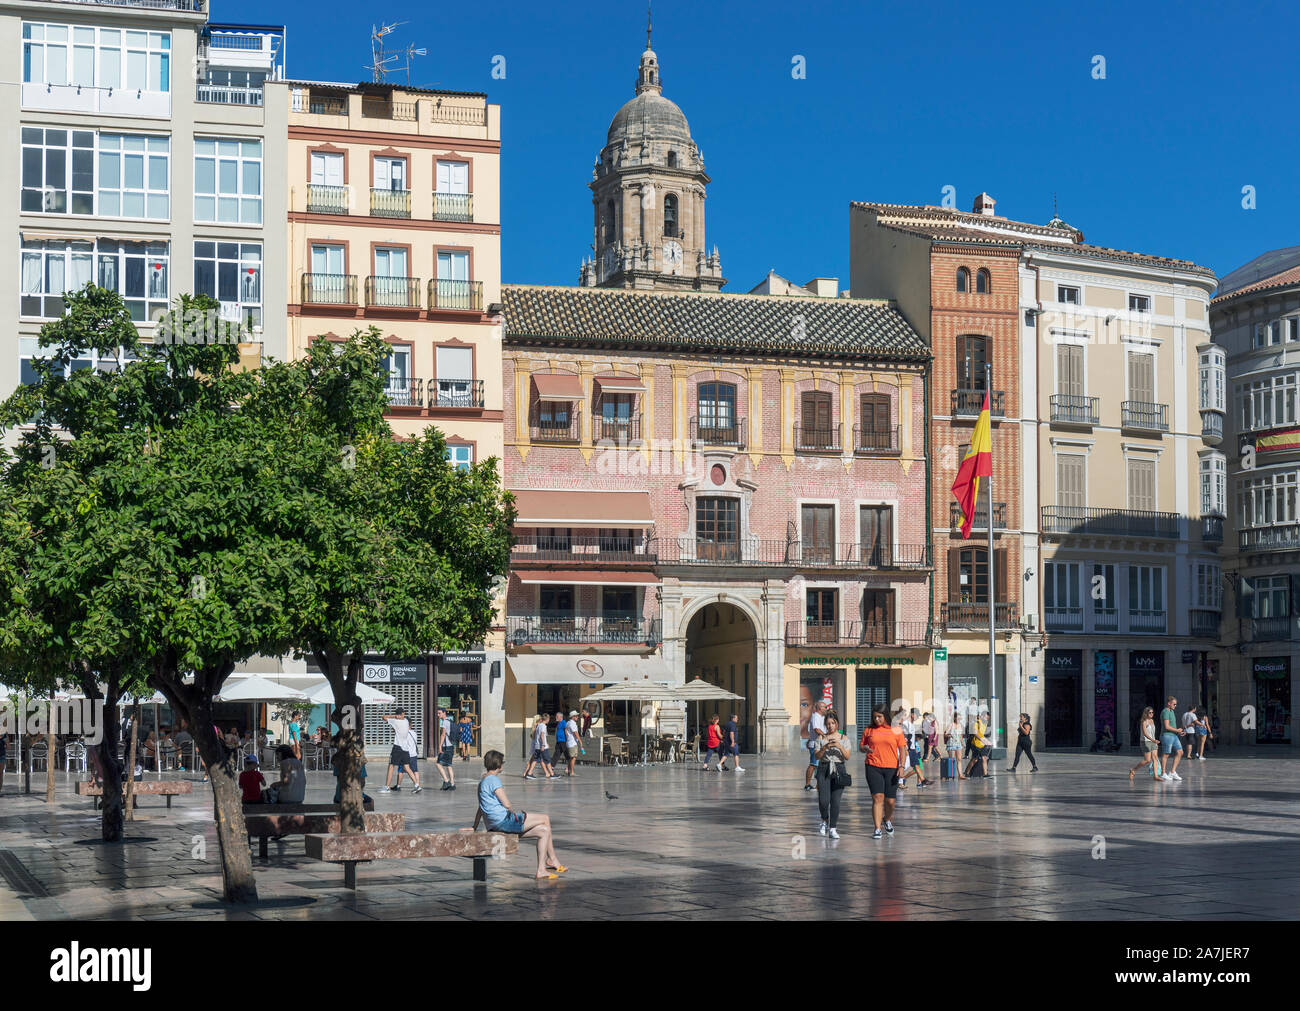 Malaga, Costa del Sol, Malaga Province, Andalusia, southern Spain. Plaza de la Constitucion. Constitution Square. Stock Photo